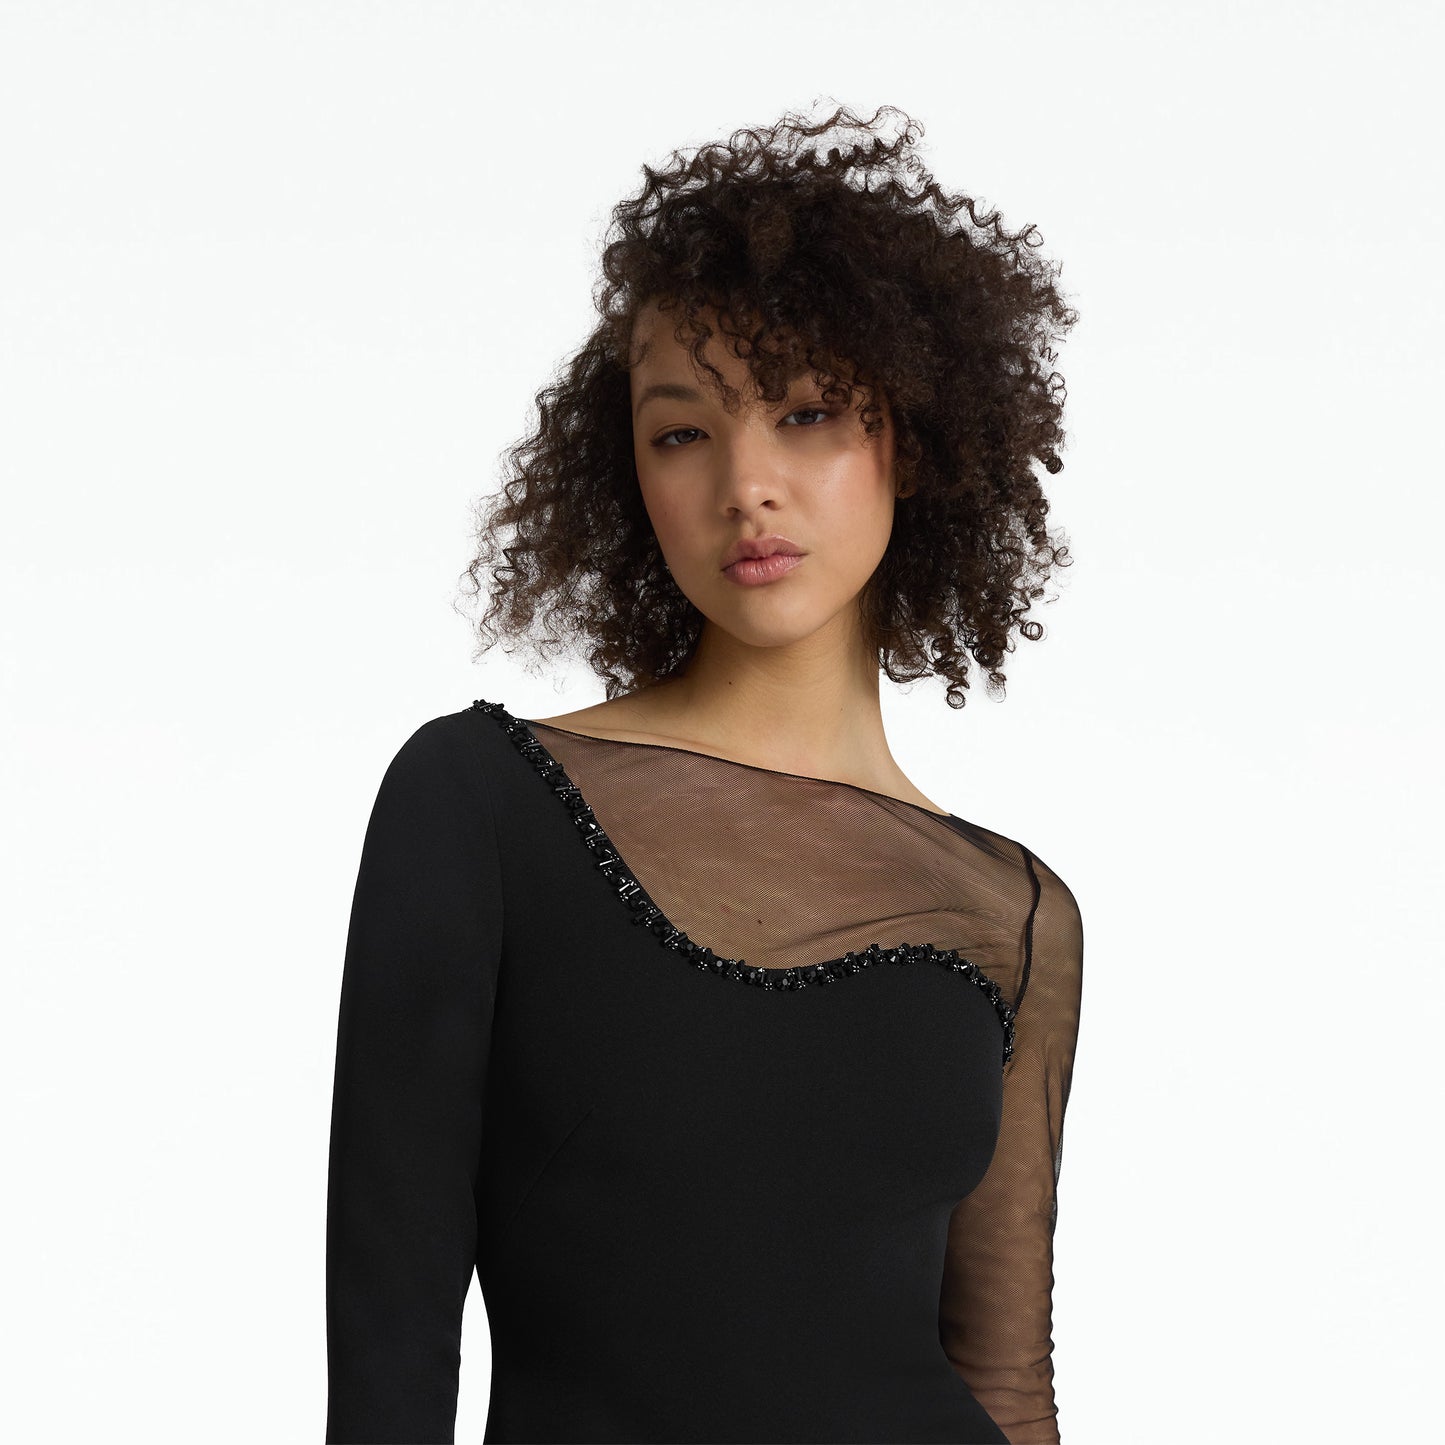 Tetlea Black Short Dress